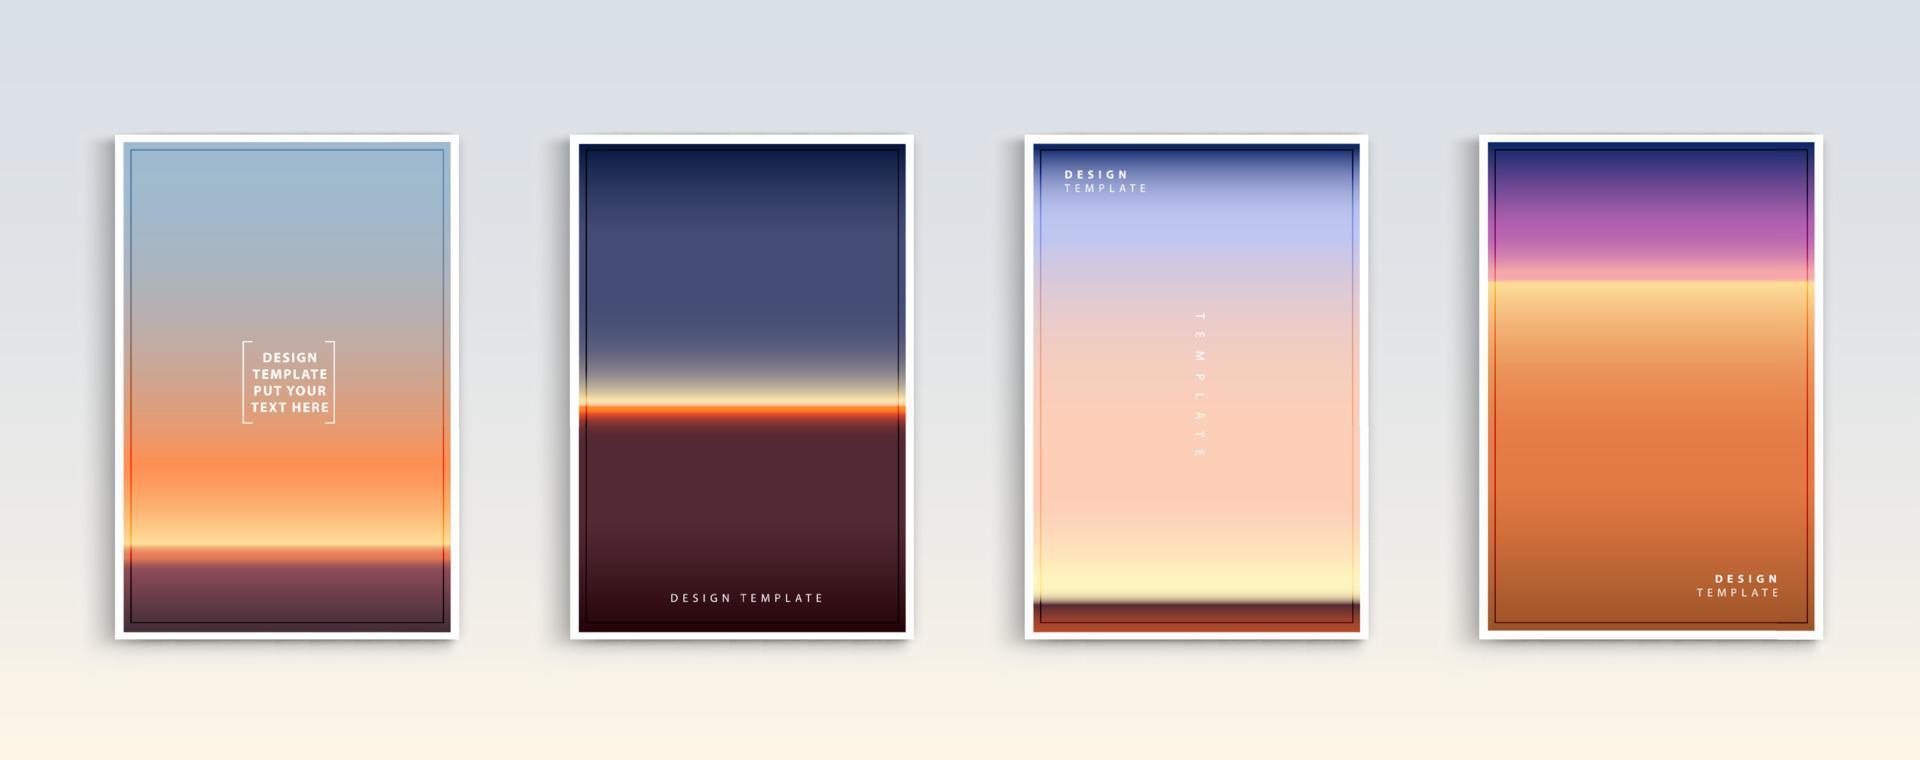 moderna gradienter sommar, solnedgång och soluppgång havet bakgrunder vektor set. färg abstrakt bakgrund för app, webbdesign, webbsidor, banners, gratulationskort. vektor illustration design